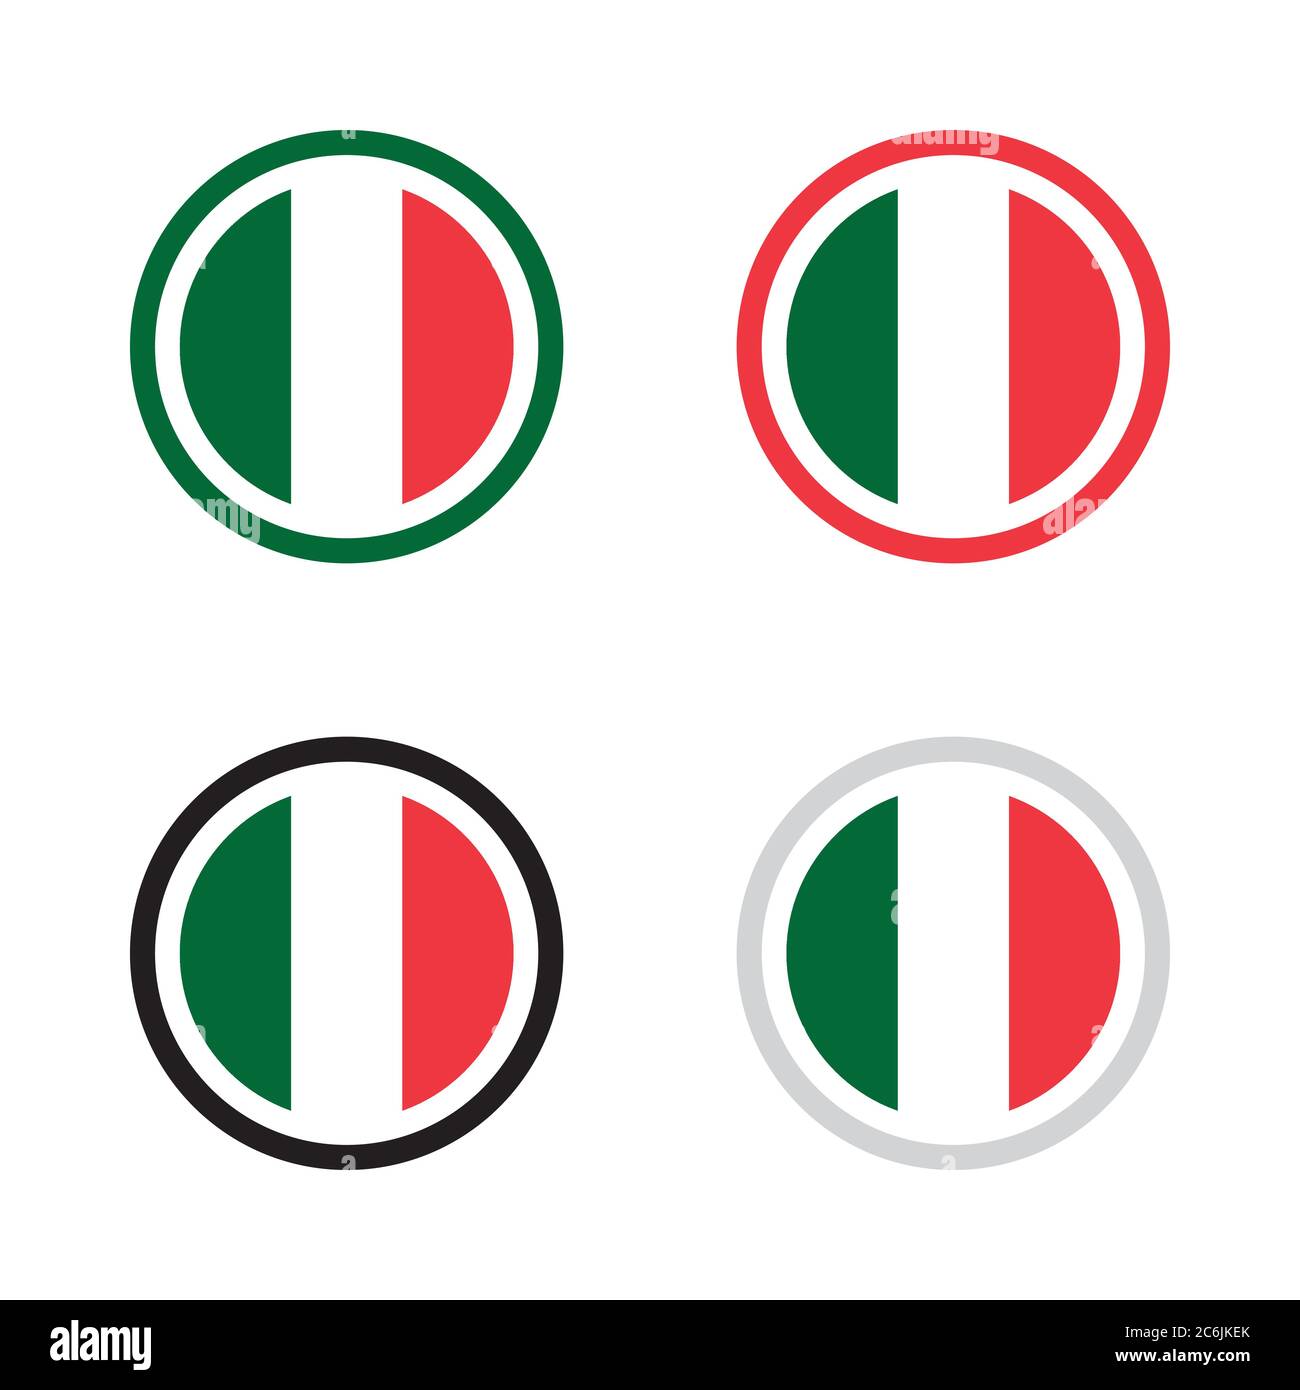 Emblema simbolo made in Italy distintivo disegno vettoriale ispirato alla nazione italiana bandiera nazionale rossa e verde per etichetta prodotto Illustrazione Vettoriale